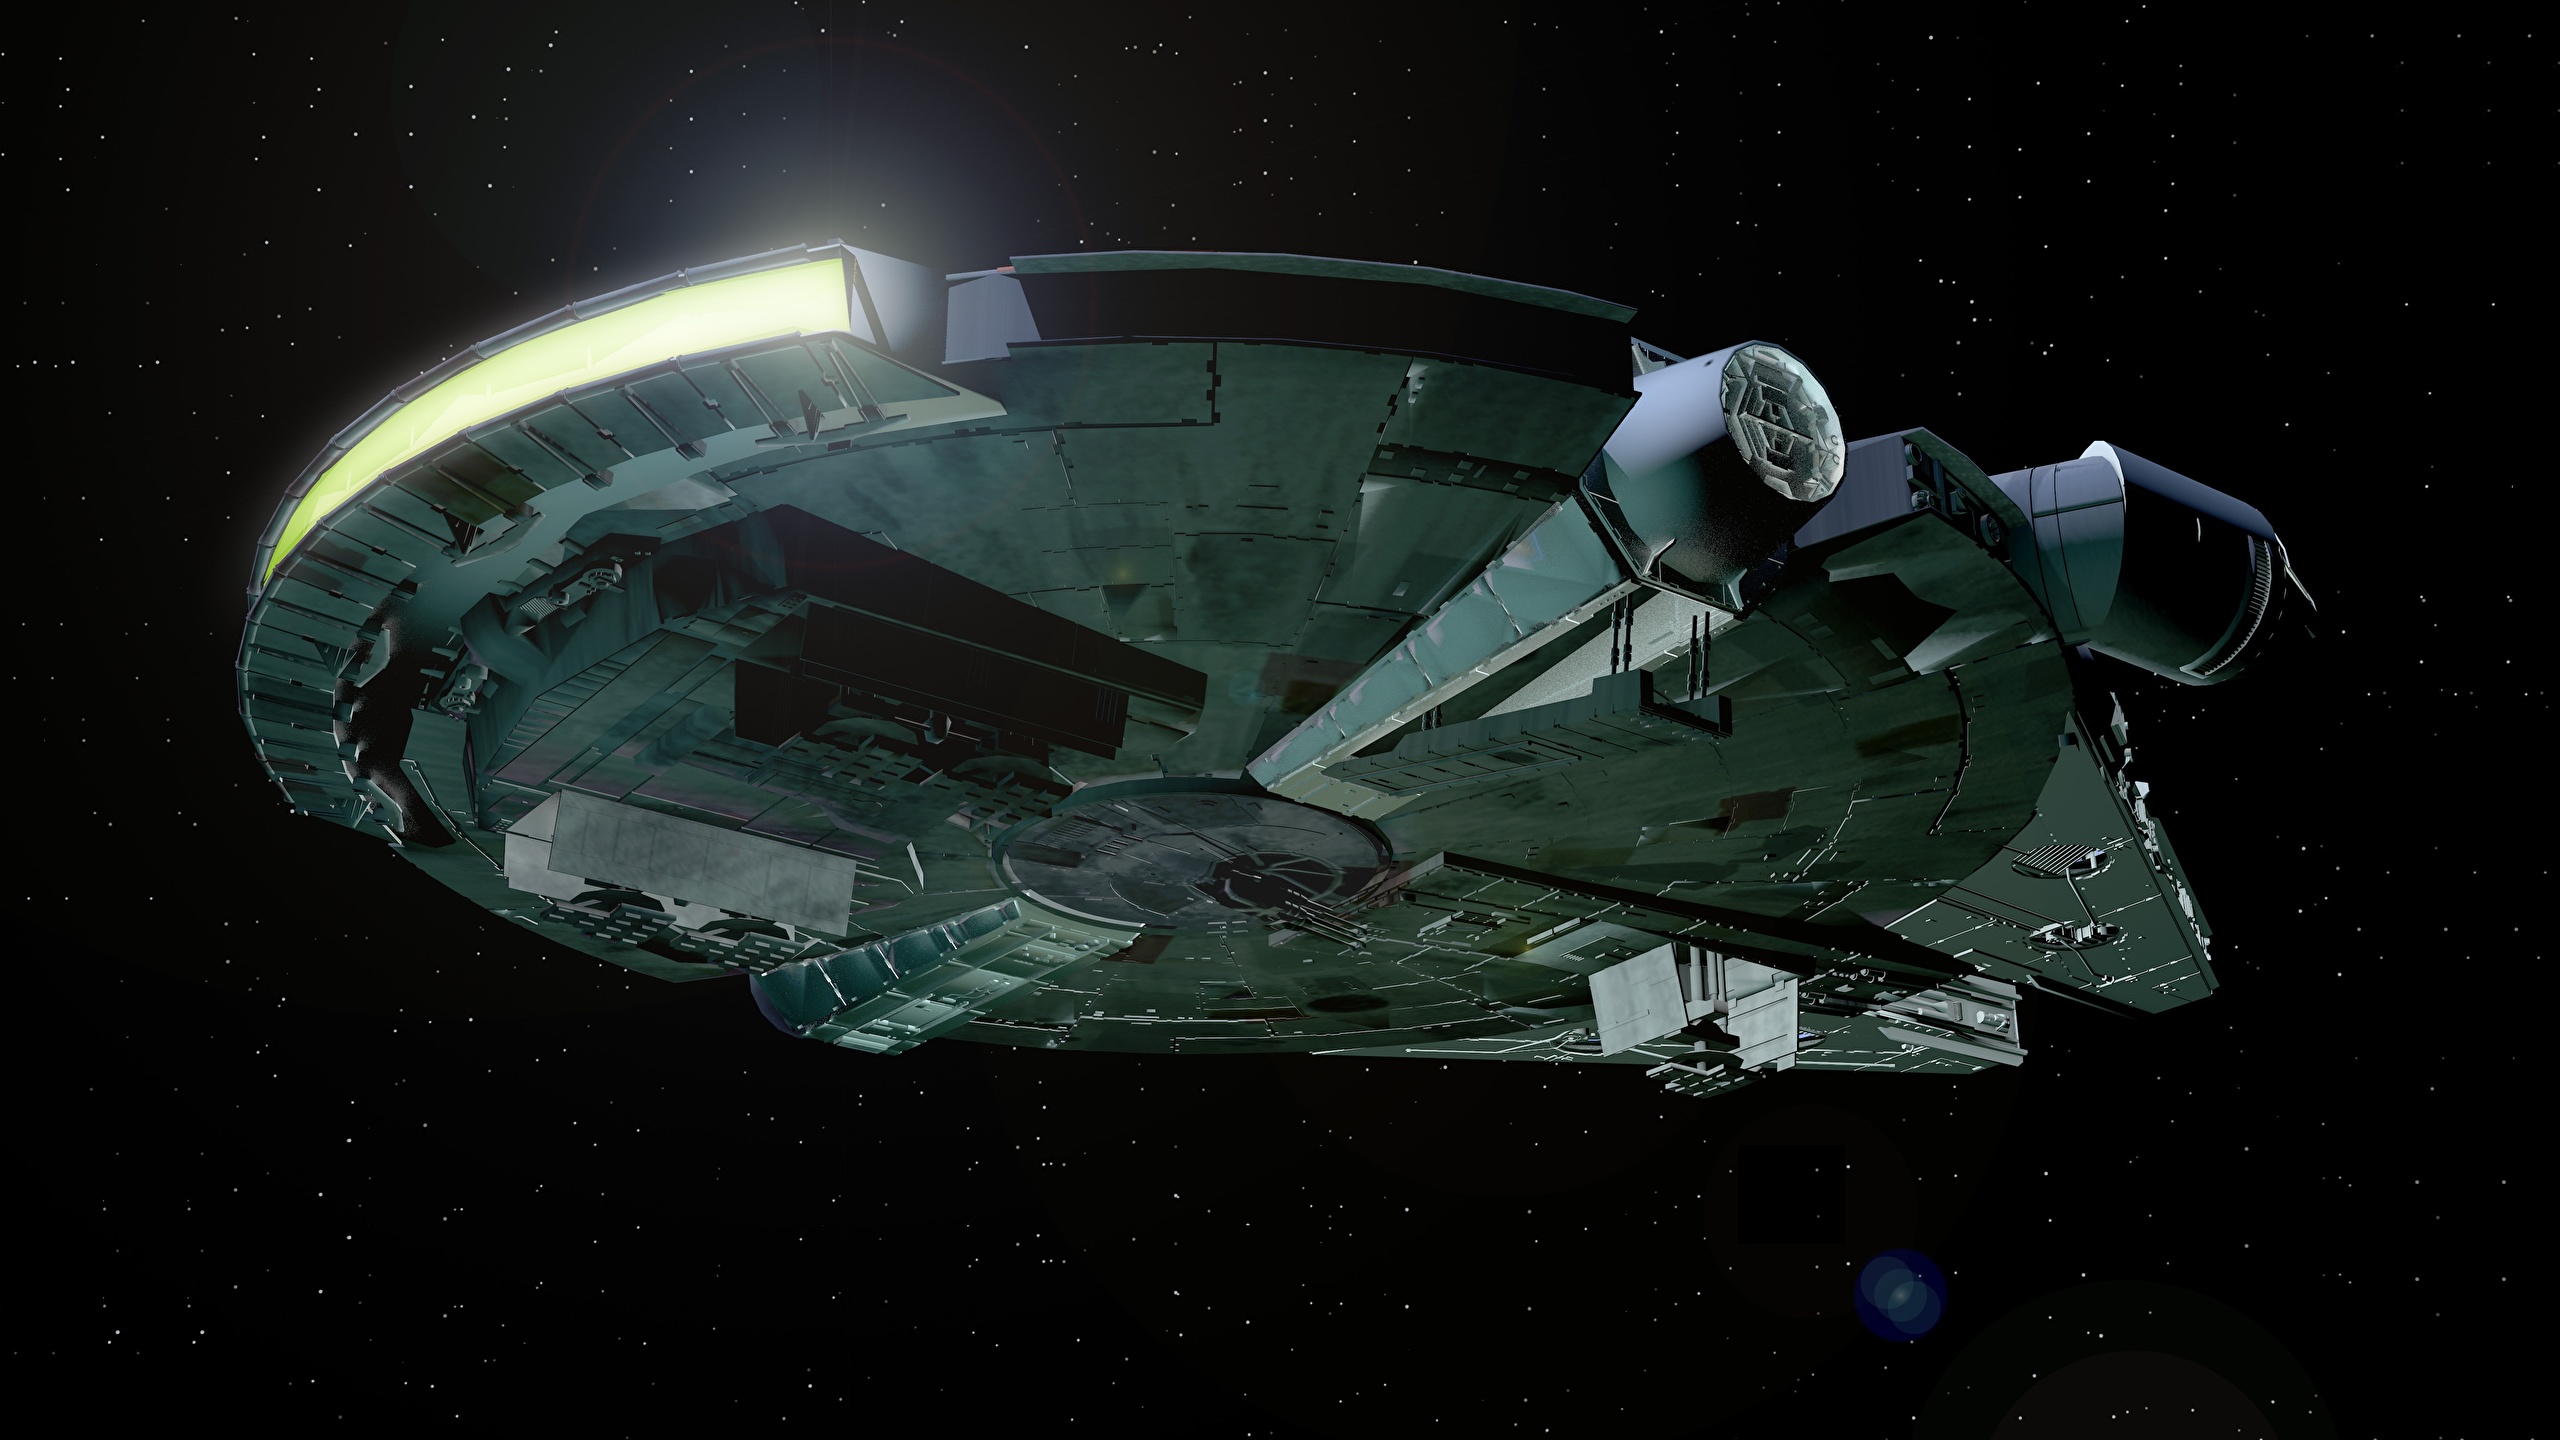 壁紙 2560x1440 スター ウォーズ 映画 恒星船 船 Millennium Falcon 映画 3dグラフィックス ダウンロード 写真